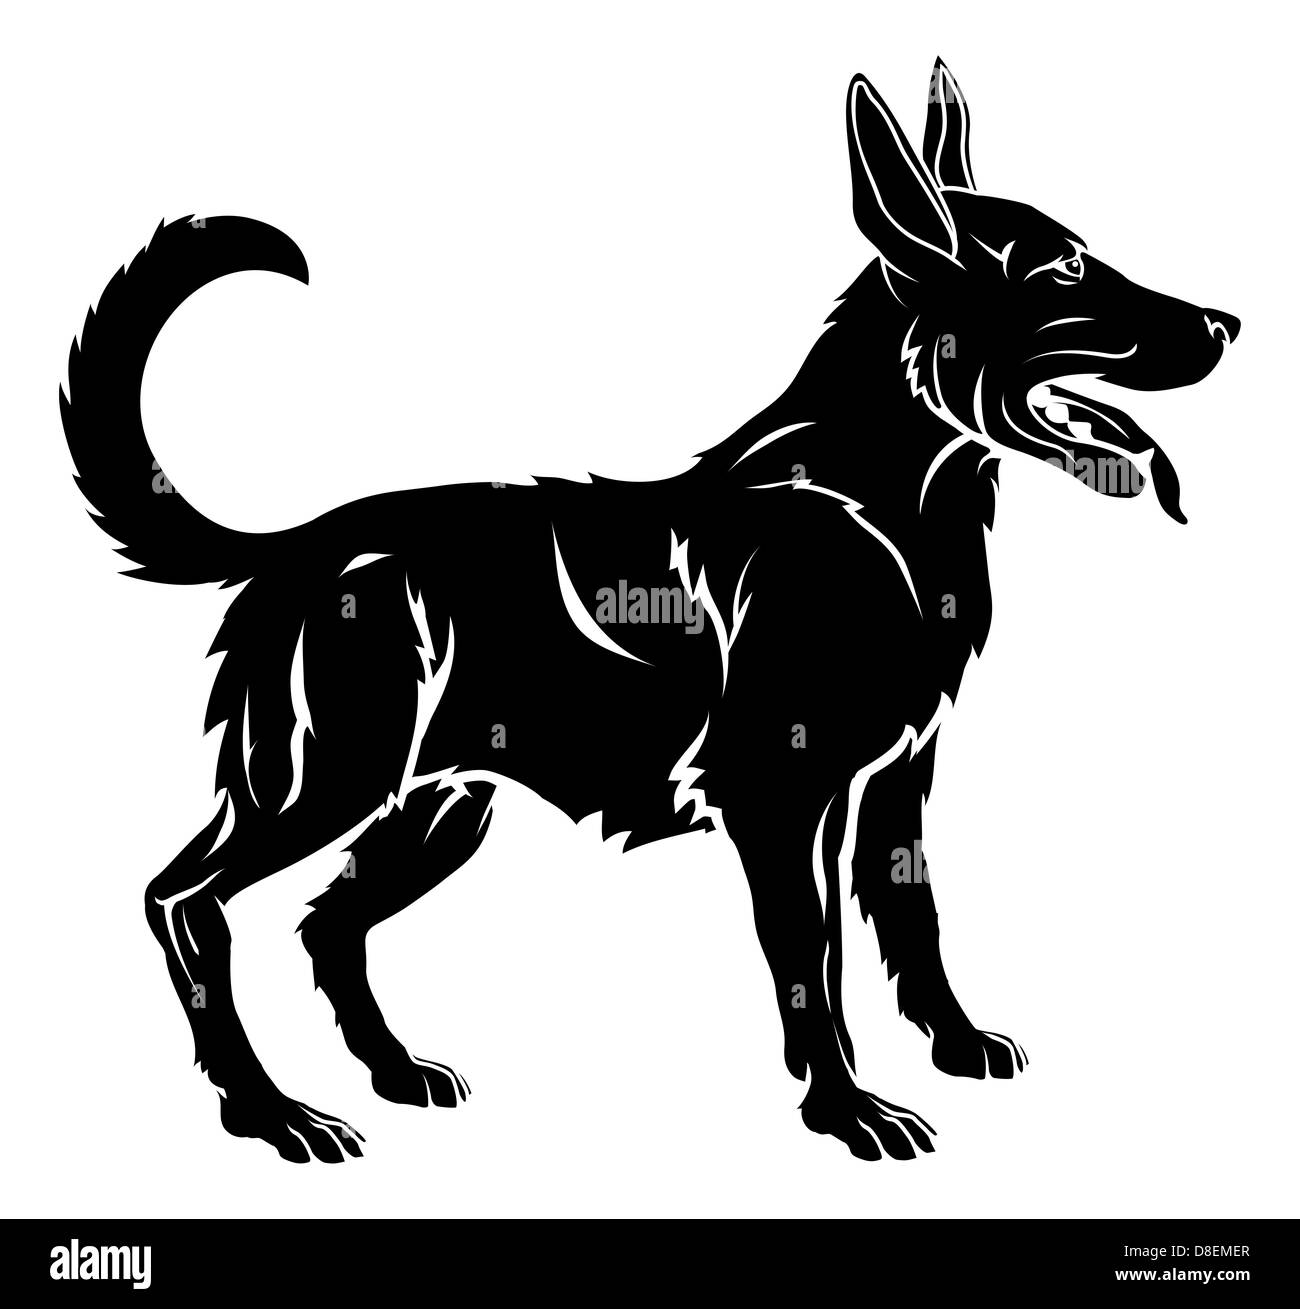 Une illustration d'un chien stylisé peut-être un tatouage de chien Banque D'Images